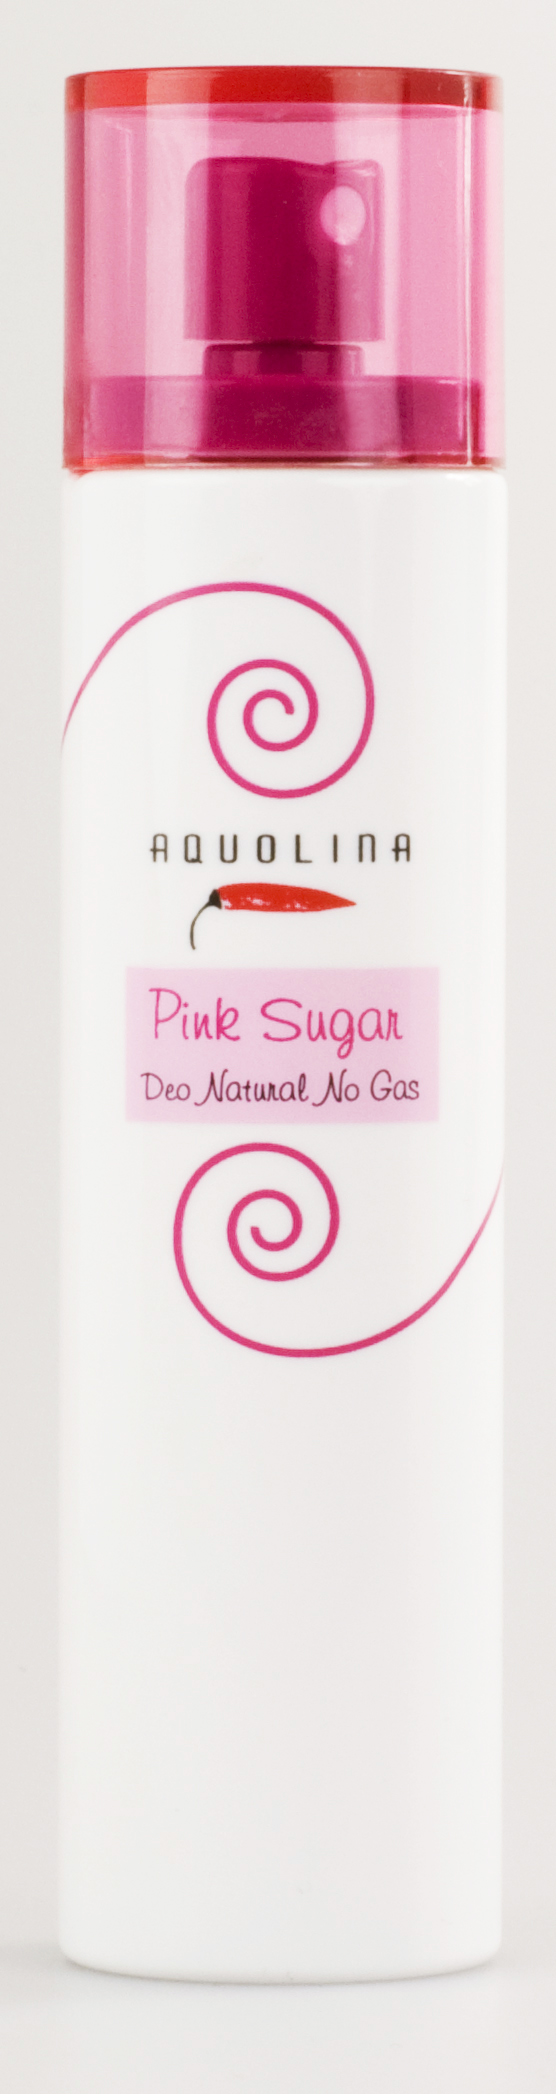 Aqoulina Pink Sugar Deo Natural